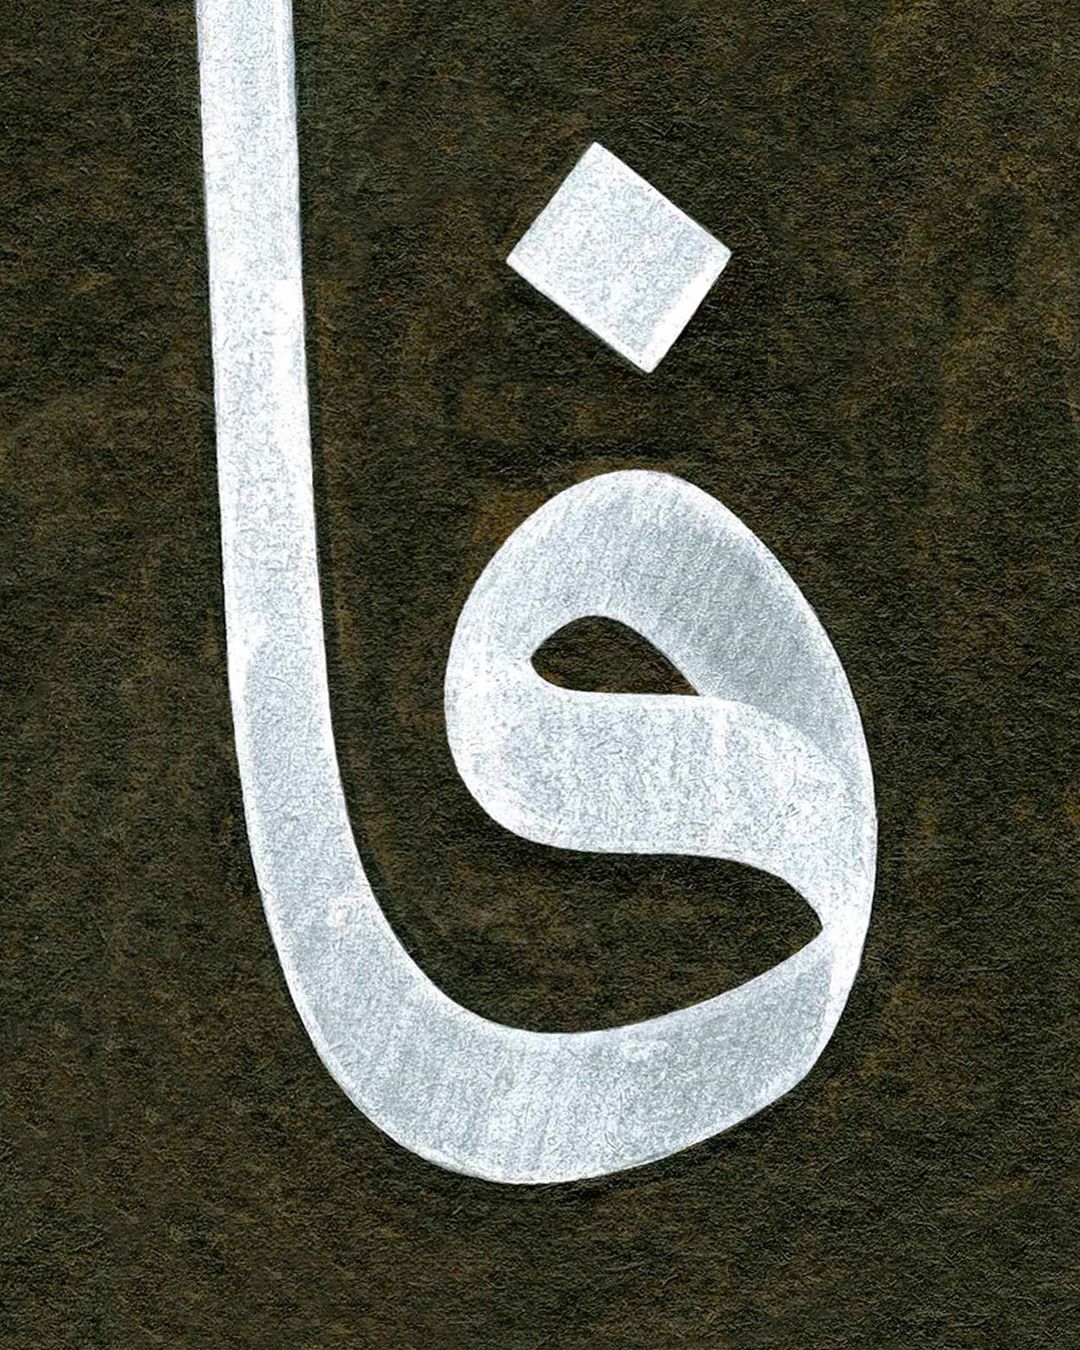 Work Calligraphy #جمعة_مباركة #hayırlıcumalar…- Abdurrahman Depeler